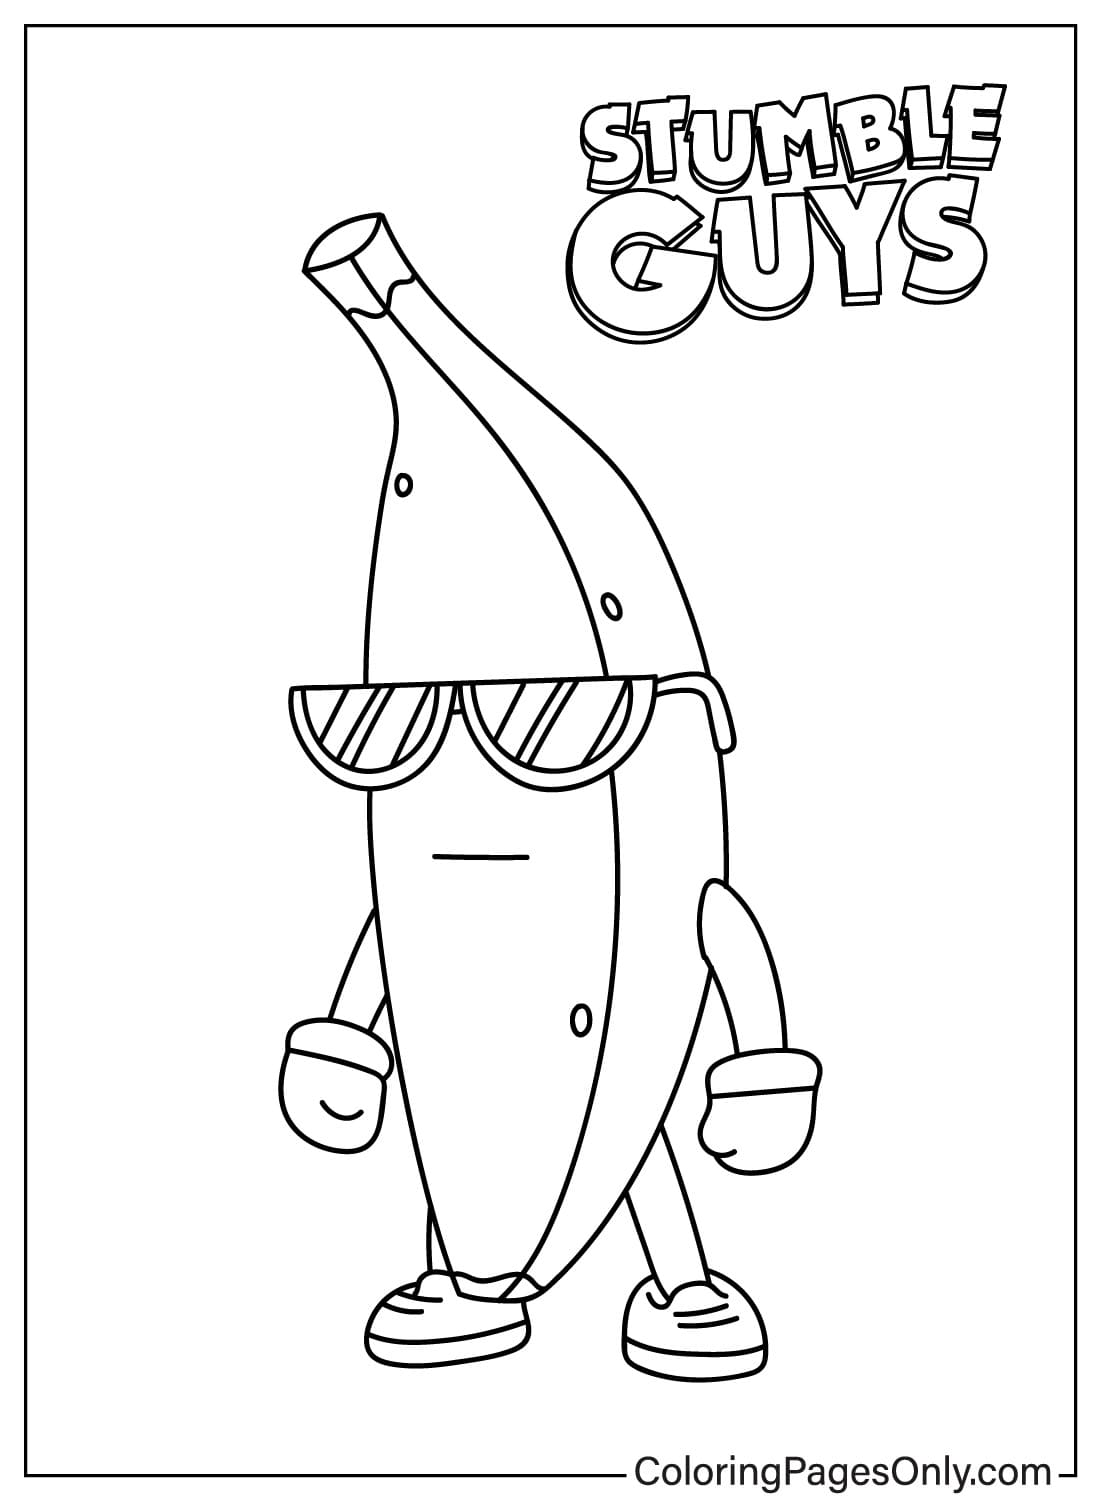 Páginas para colorir de Stumble Guys para baixar de Stumble Guys